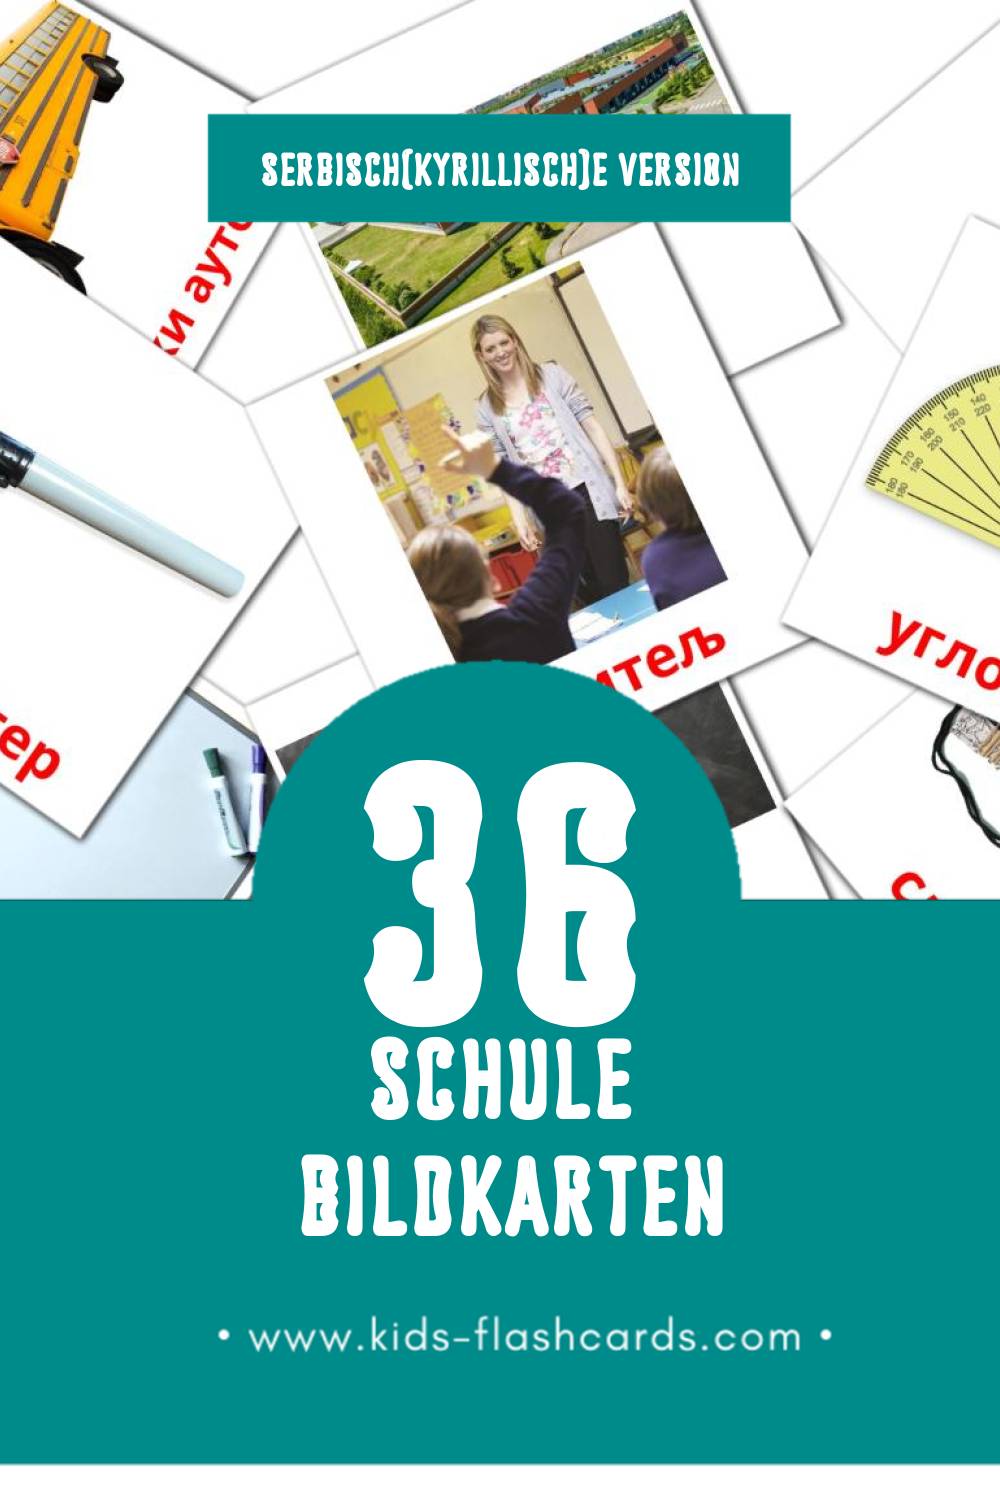 Visual  школа Flashcards für Kleinkinder (36 Karten in Serbisch(kyrillisch))